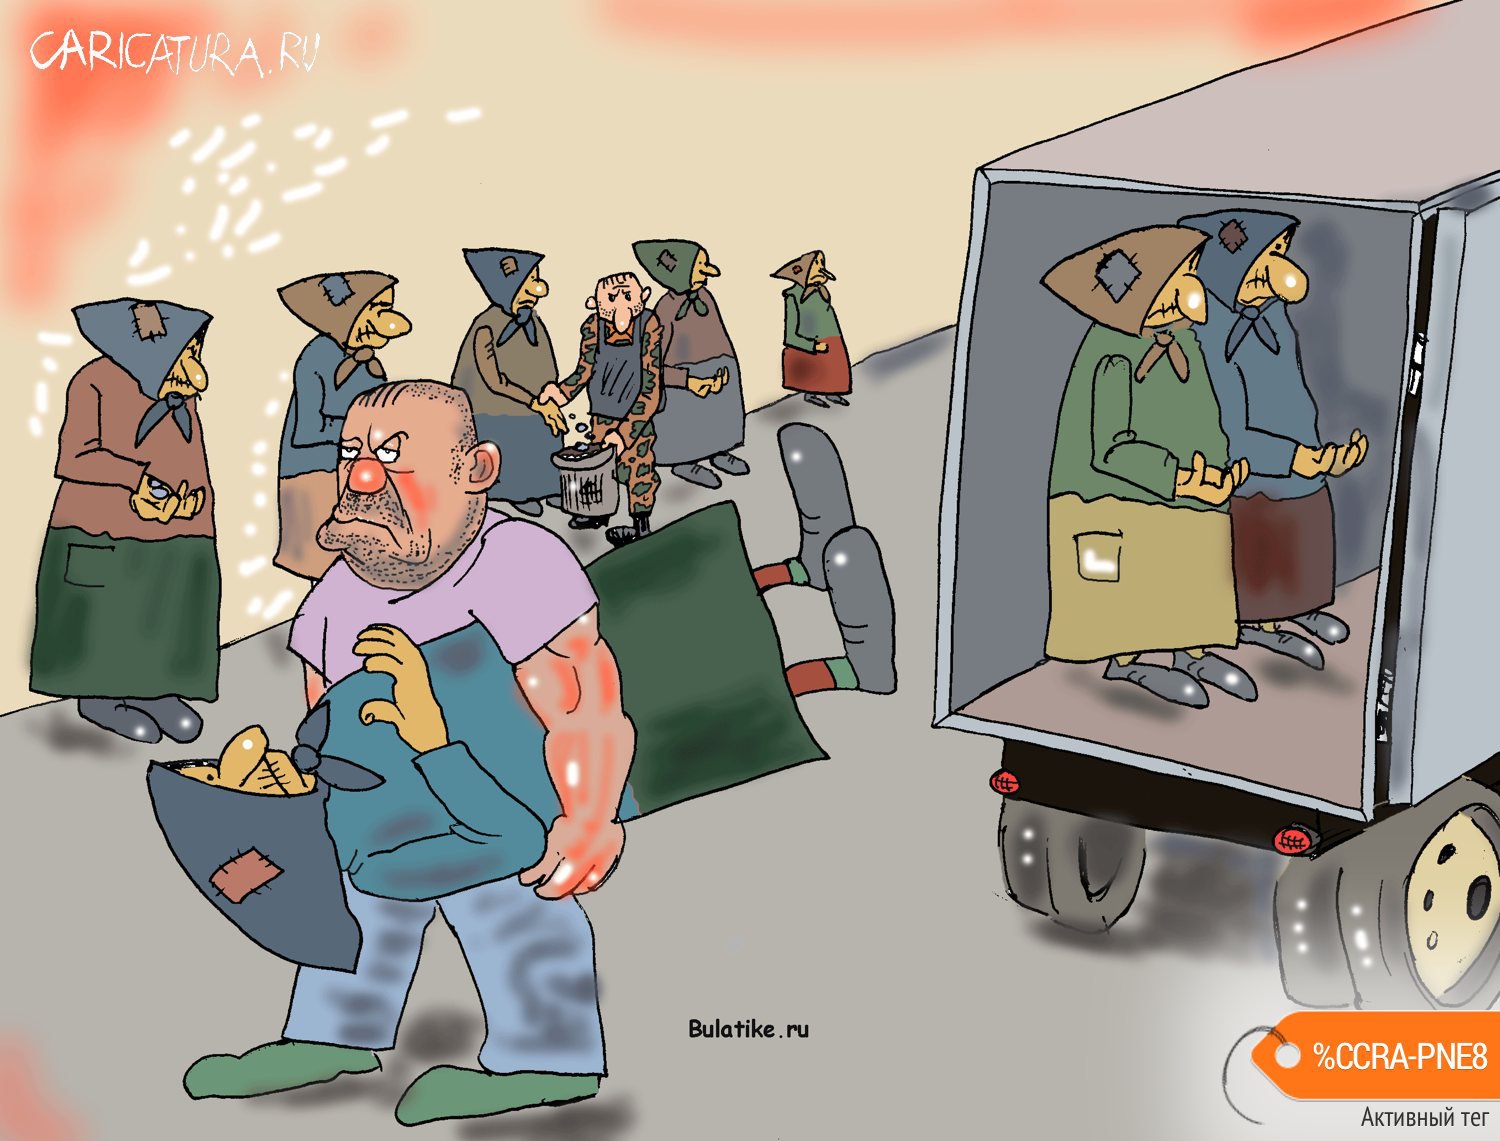 Карикатура "Бизнес", Булат Ирсаев